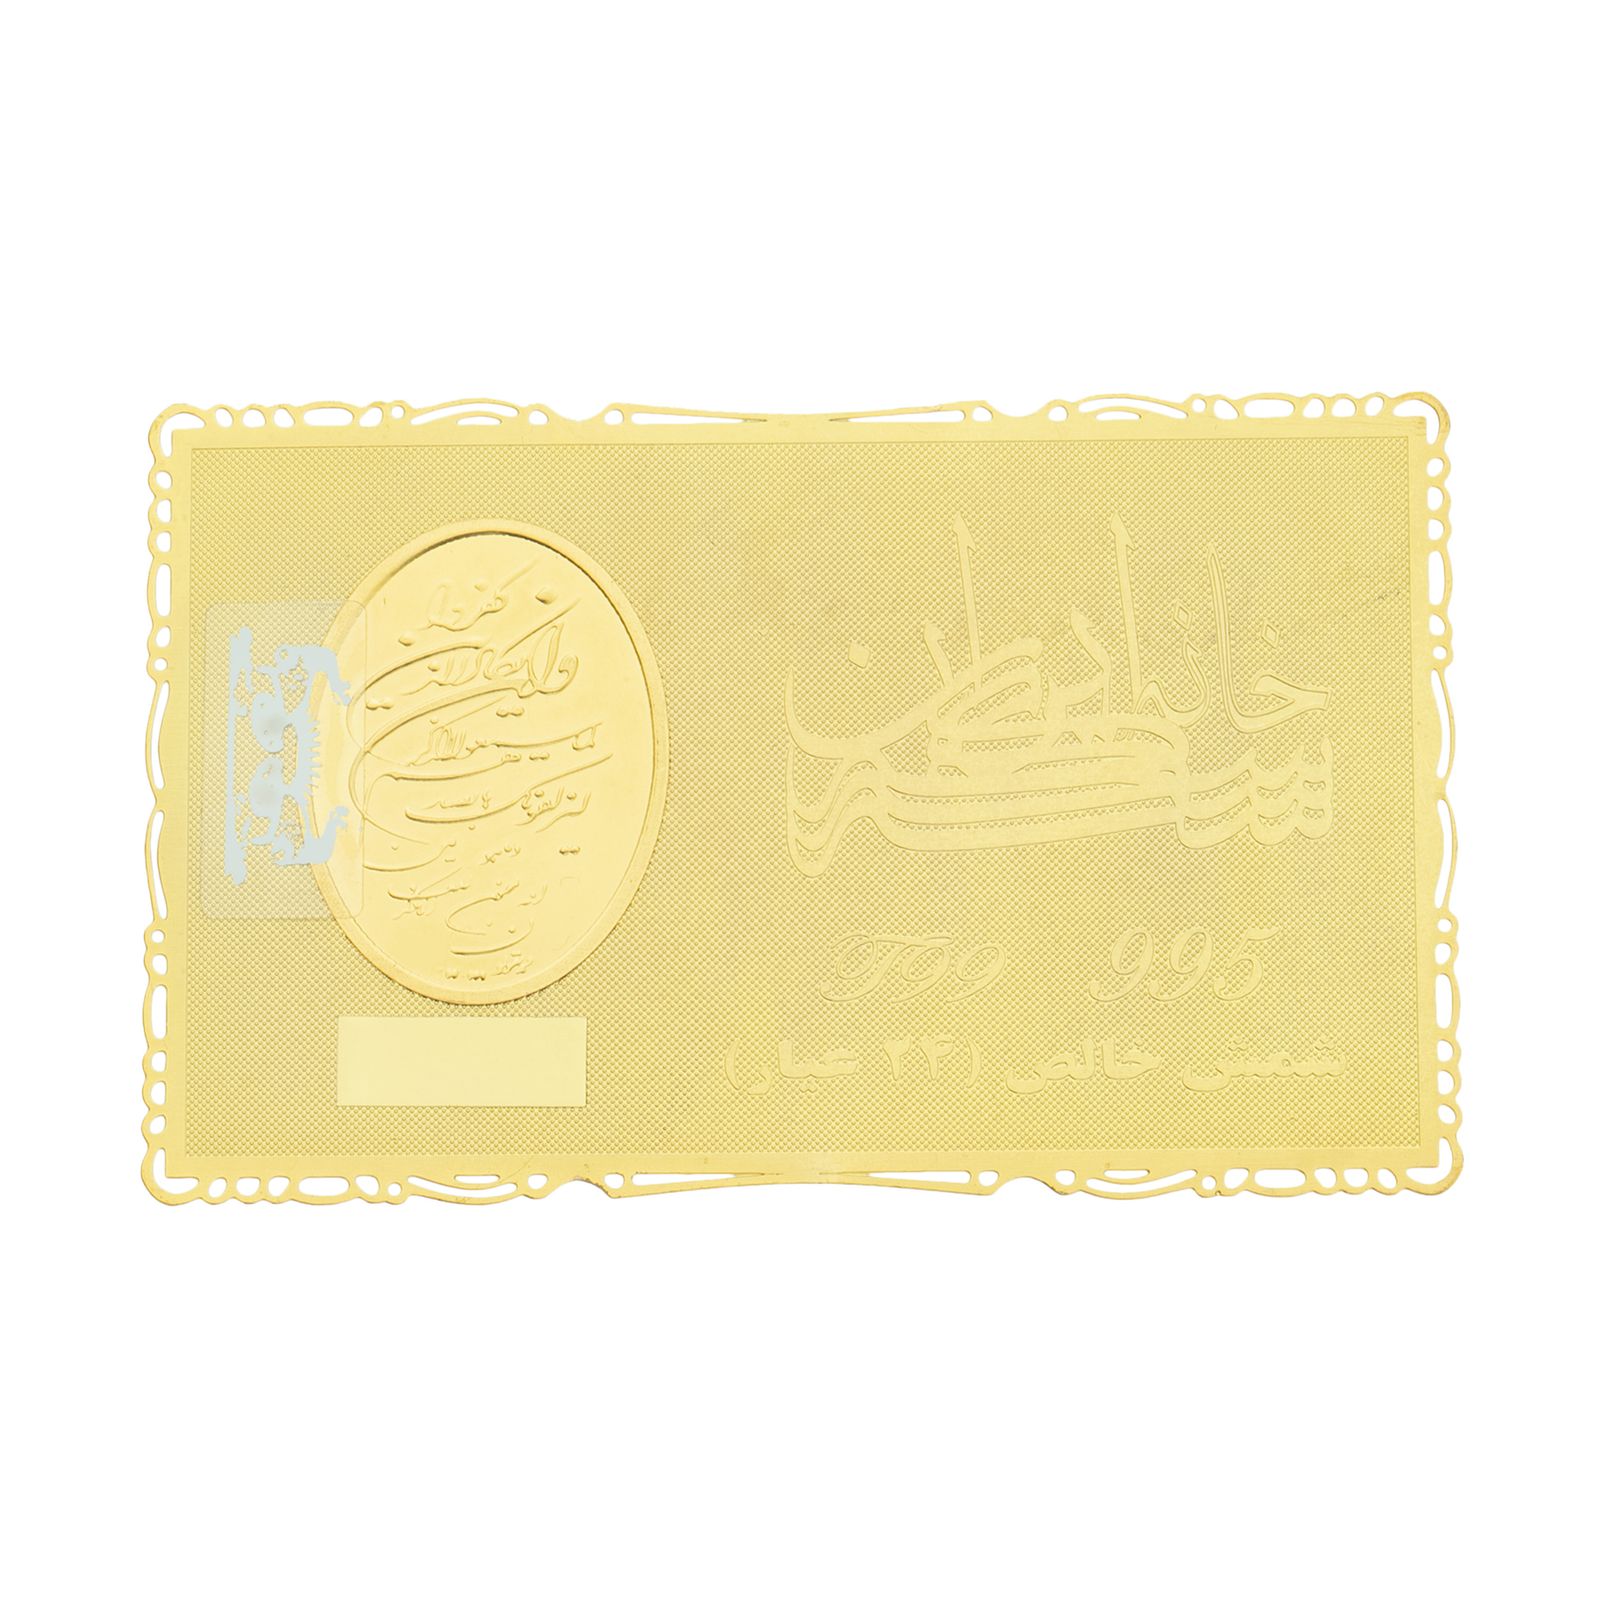 طلا گرمی 24 عیار خانه سکه ایران کد 006 -  - 1